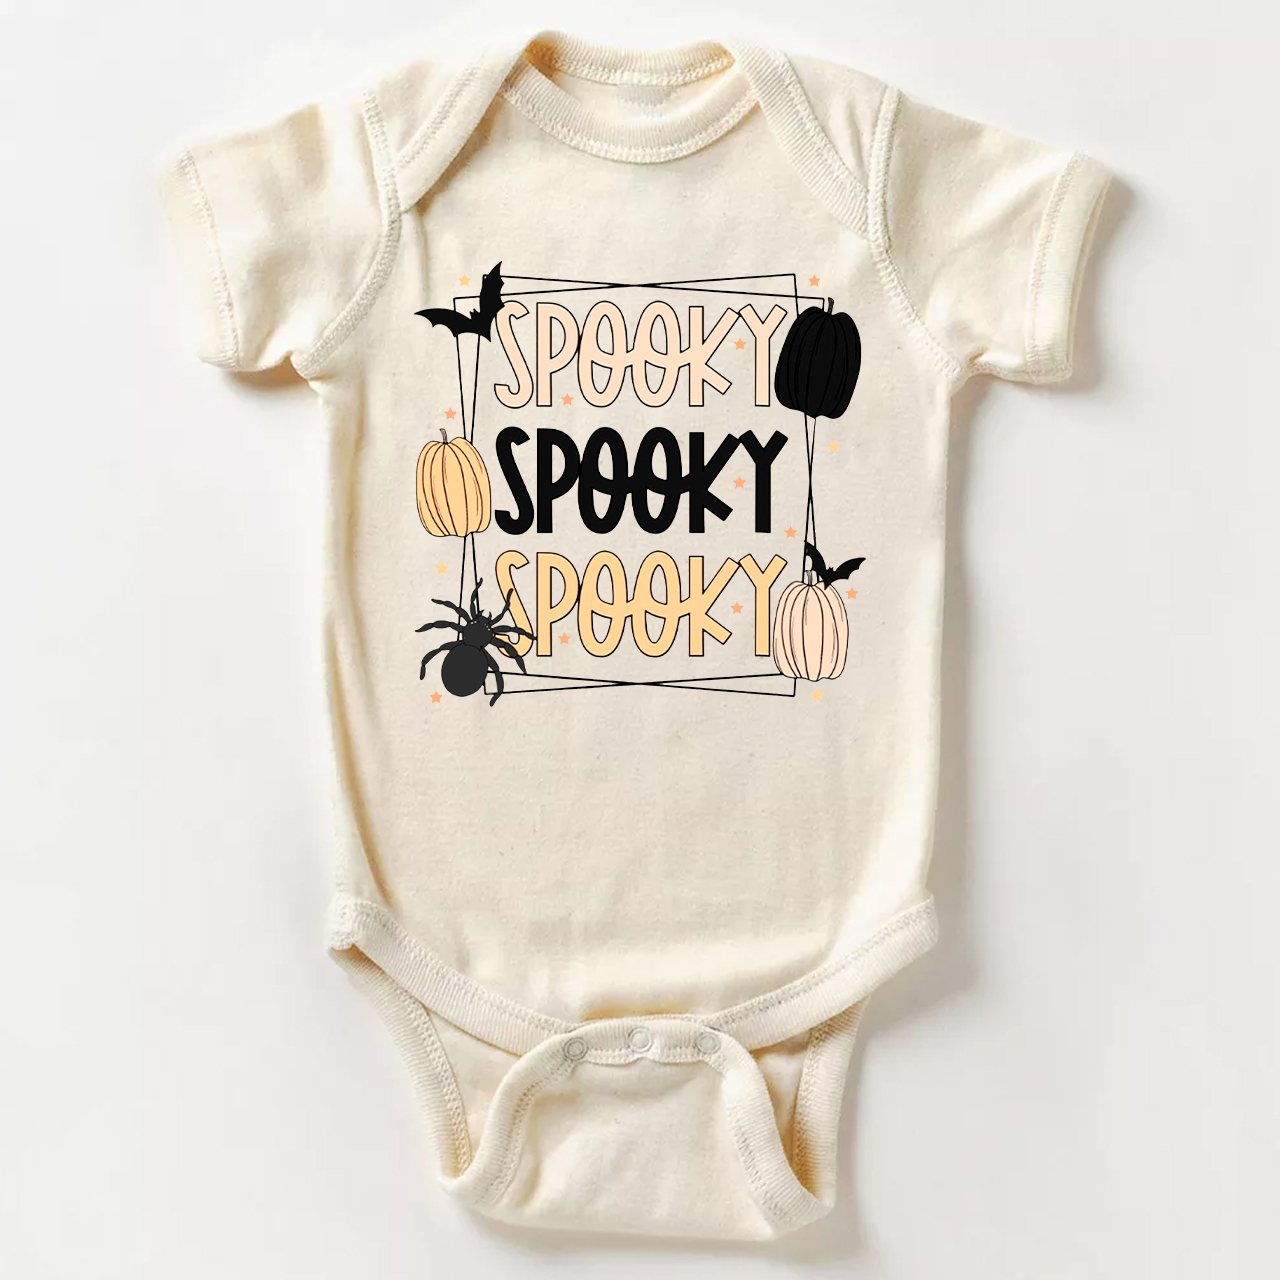 Spooky Spooky Spooky - Halloween Baby Bodysuit